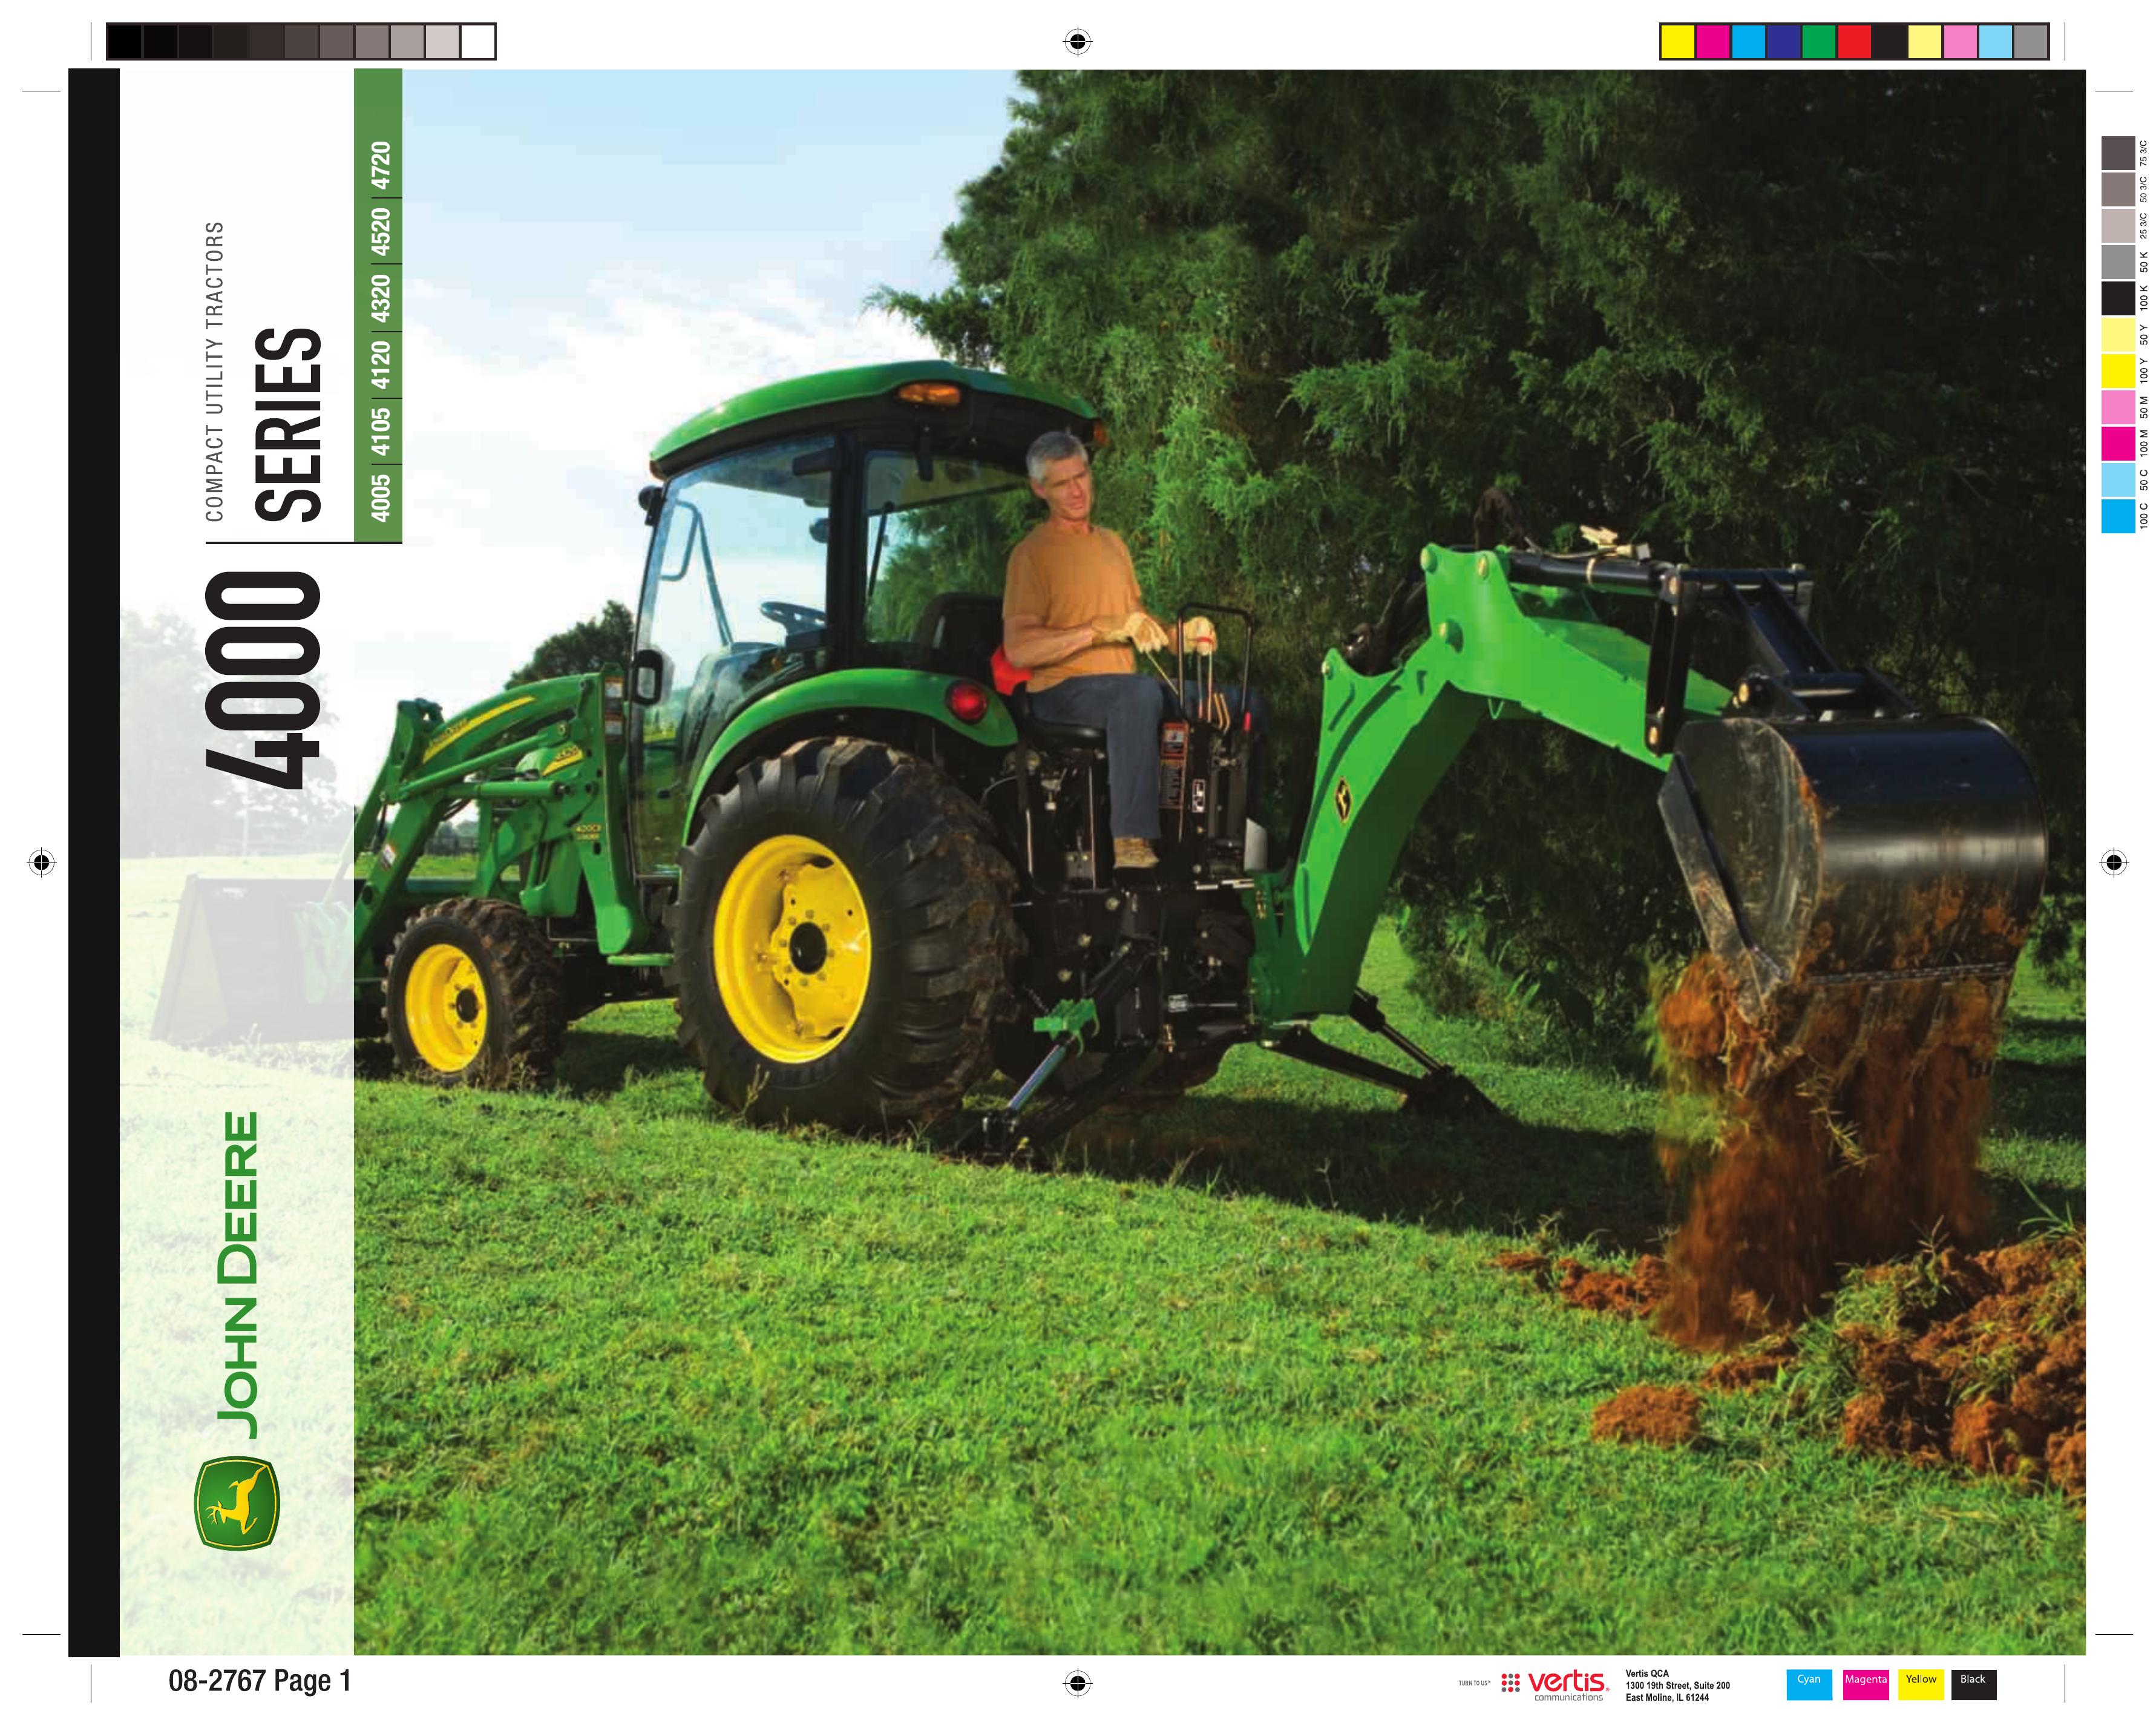 John Deere 4005 Lawn Mower User Manual